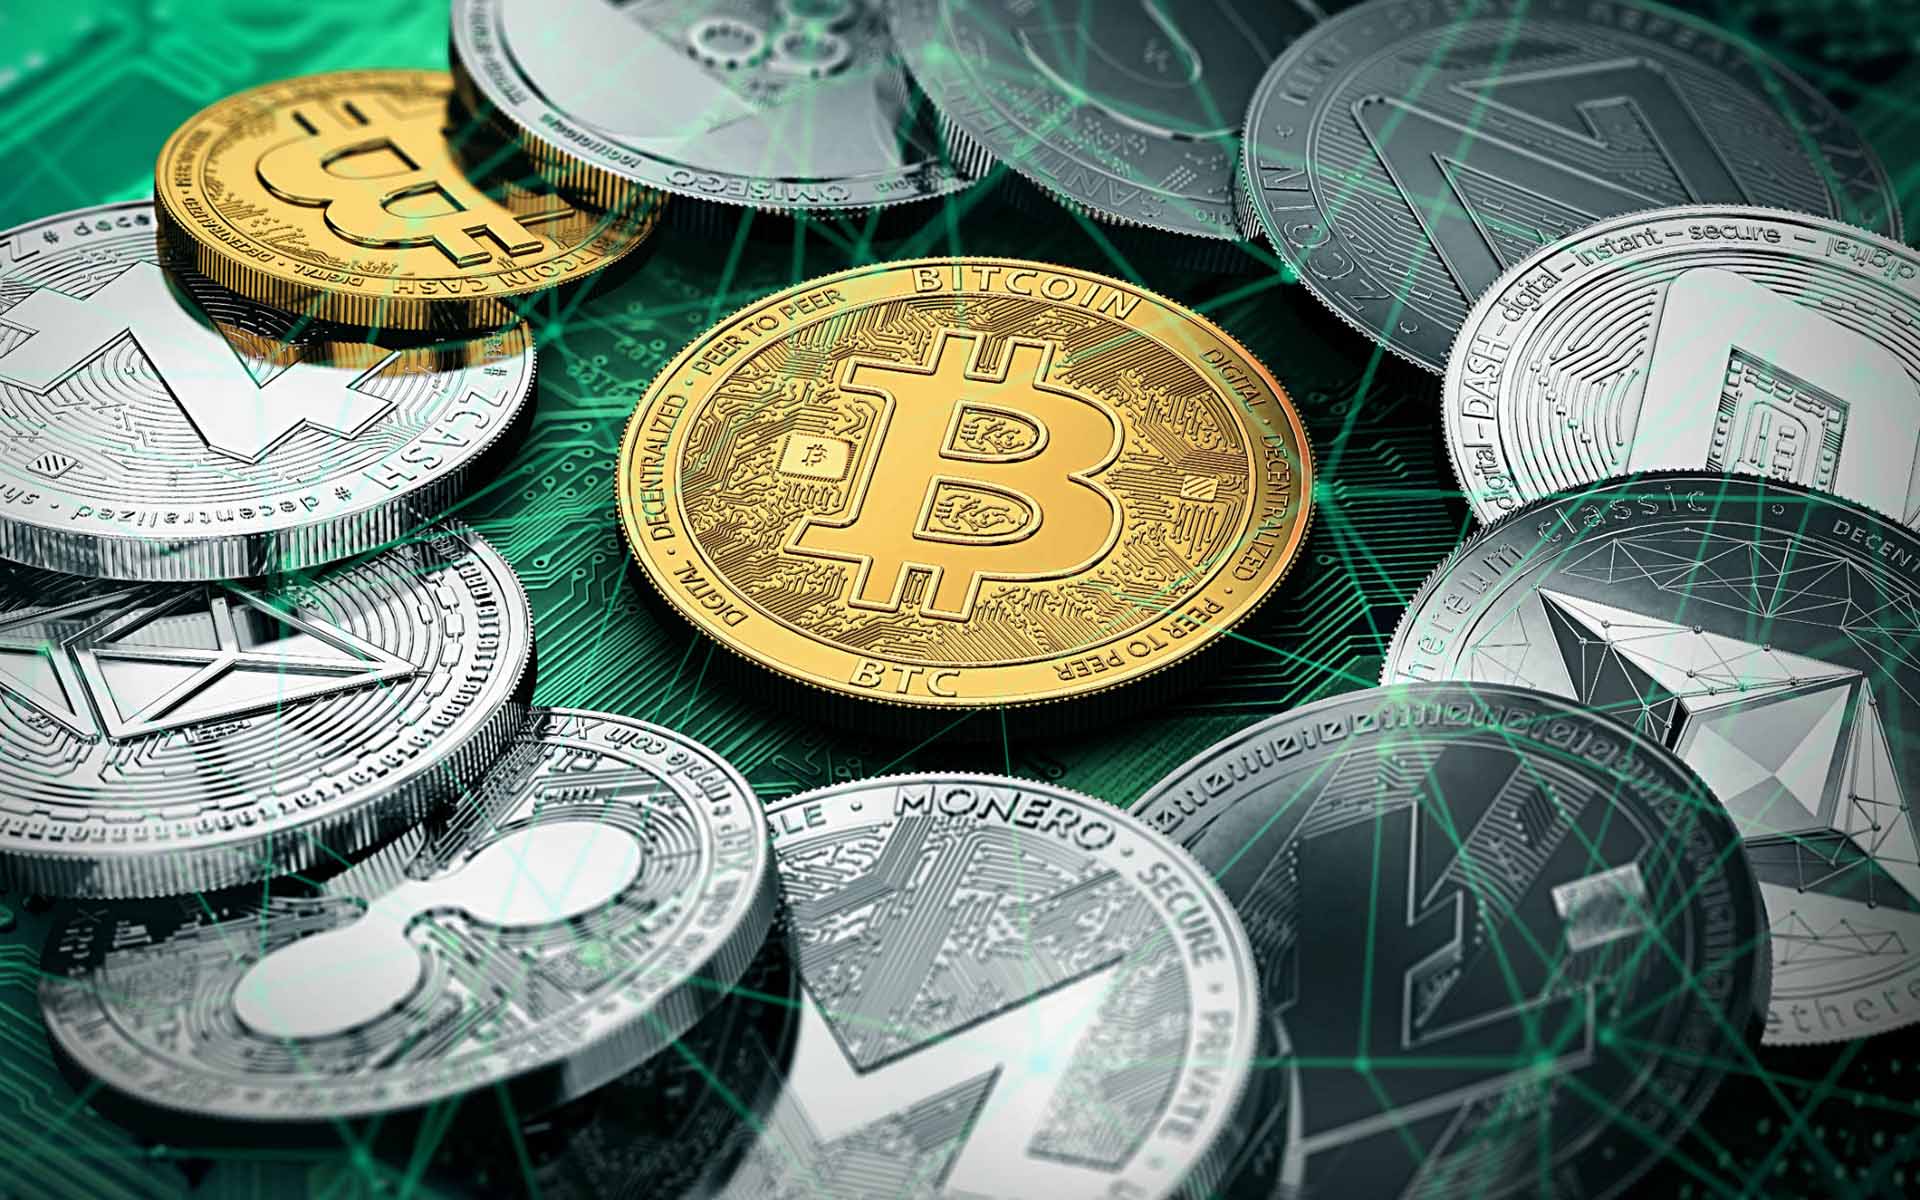 Las altcoins están invadiendo el dominio de Bitcoin en los pagos digitales